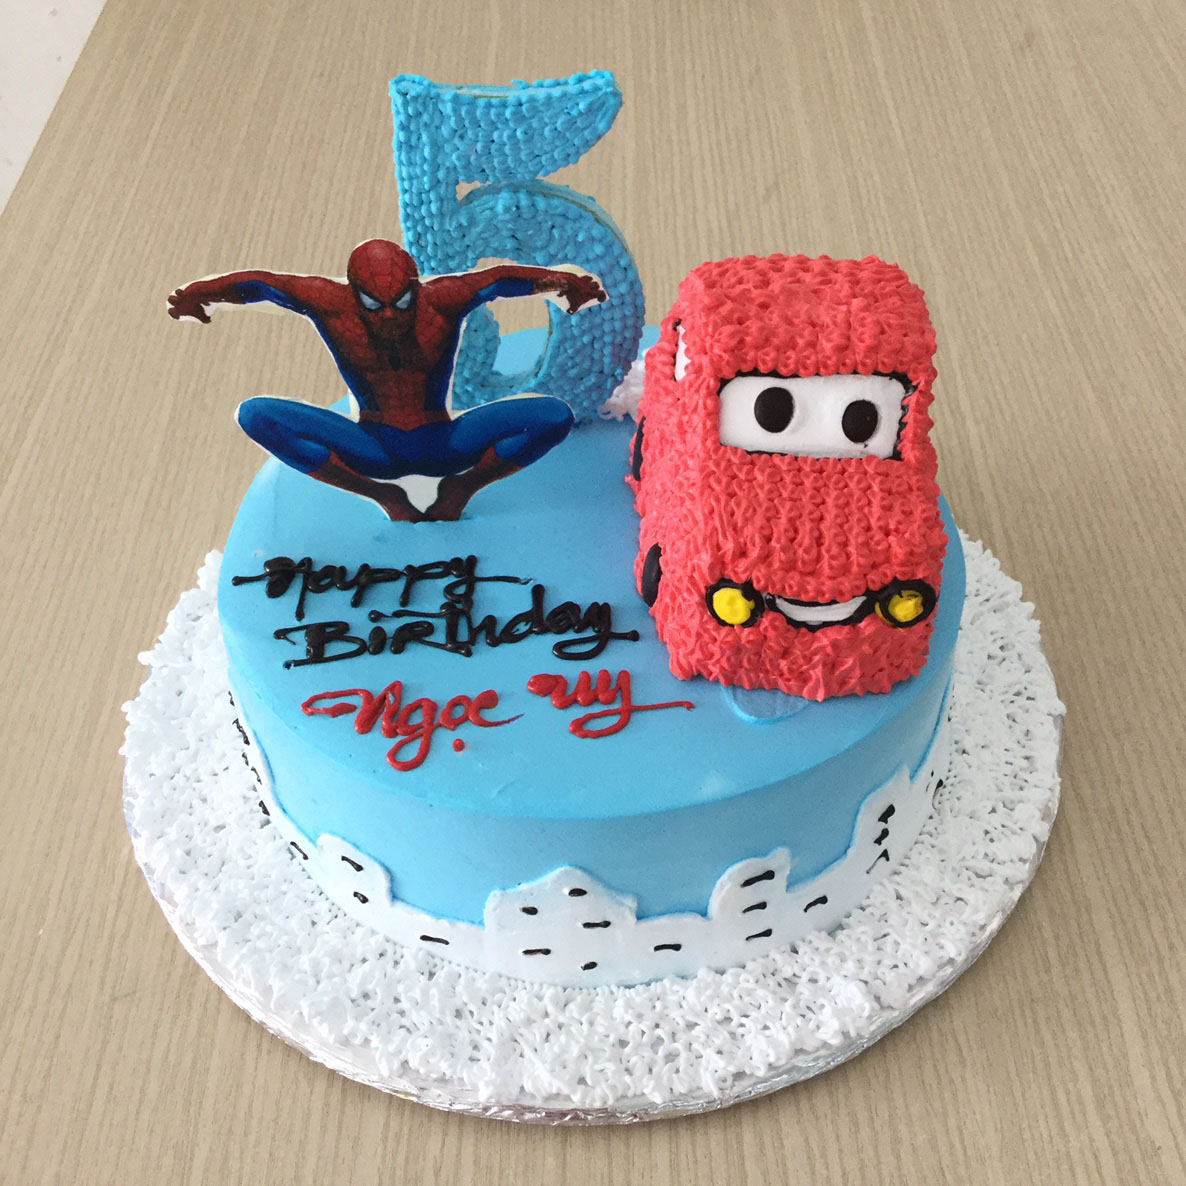 Bánh sinh nhật tạo hình 3d số 4 bắt hình siêu nhân người nhện và bánh nhỏ  độc đáo | Bánh Kem Ngộ Nghĩnh